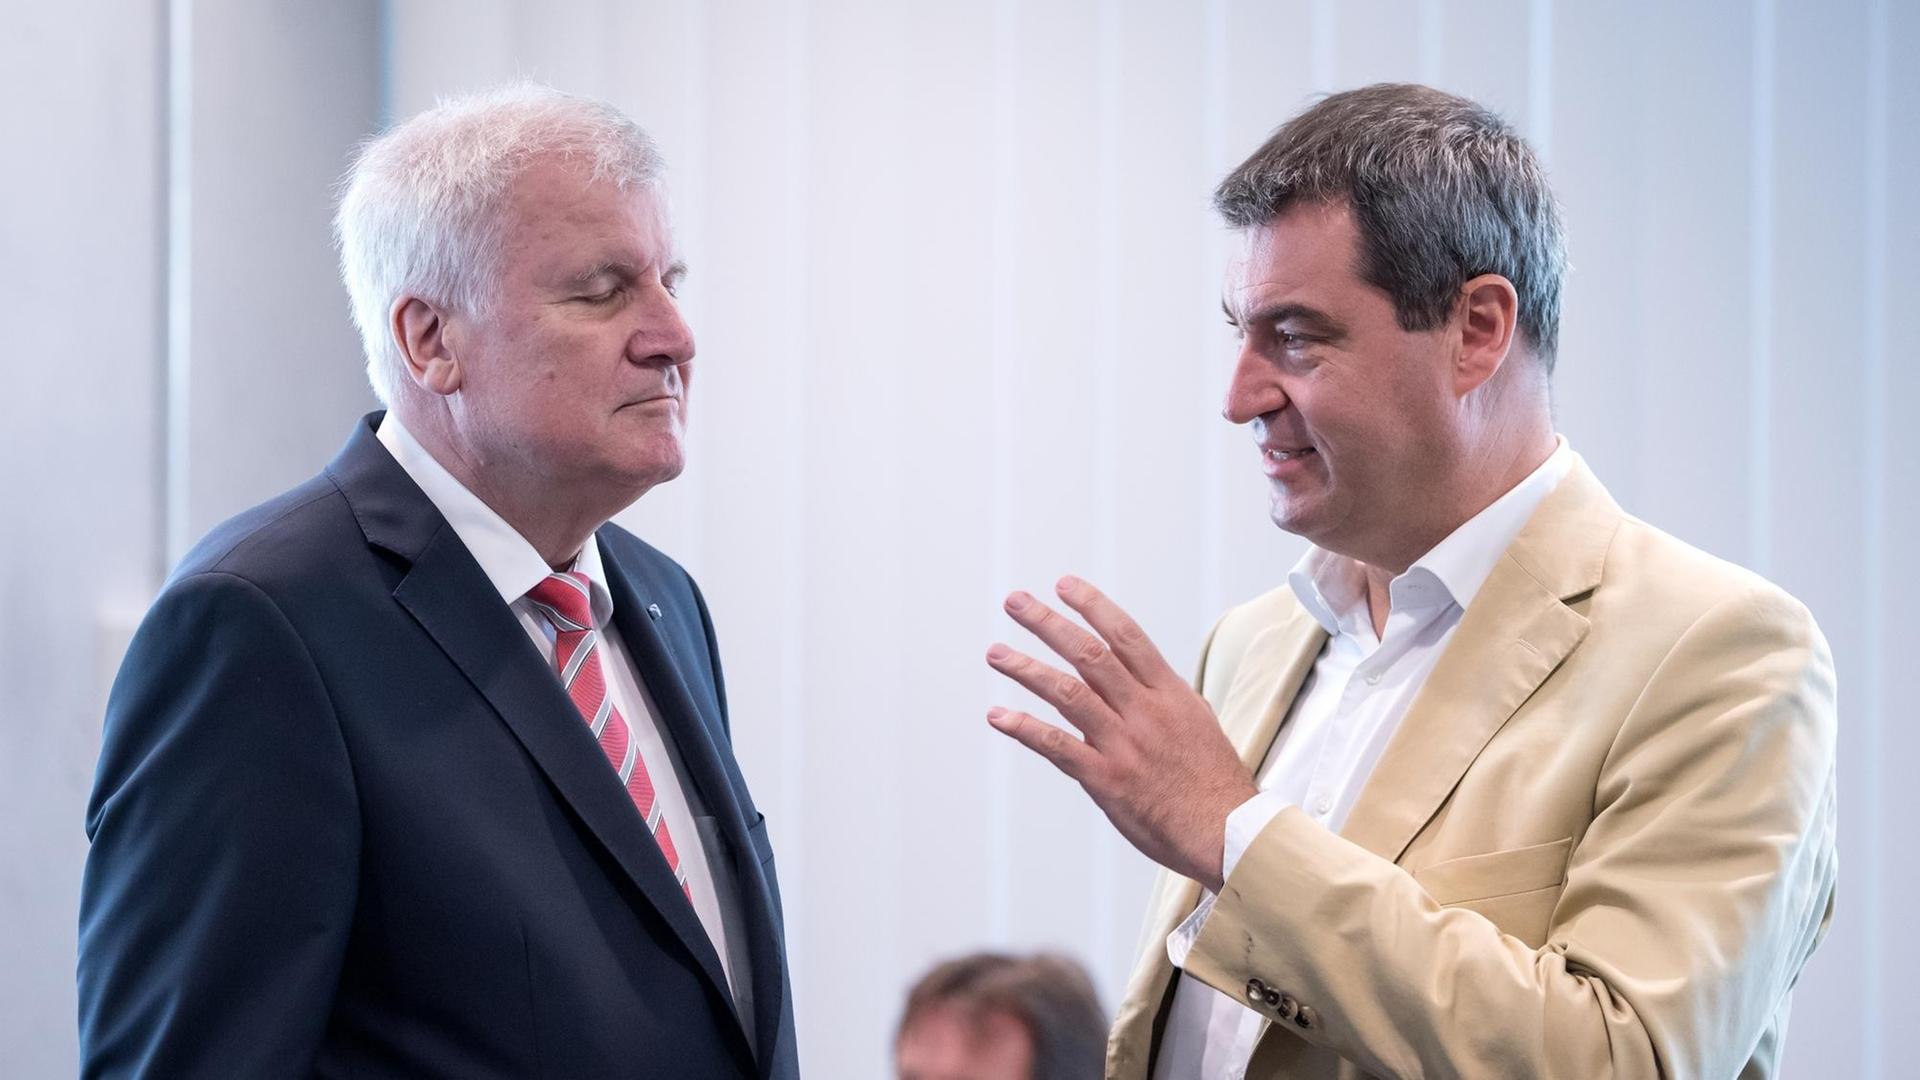 Der bayerische Ministerpräsident Horst Seehofer und der bayerische Finanzminister Markus Söder unterhalten sich im Juli 2016 in München (Bayern) vor Beginn der CSU Vorstandssitzung